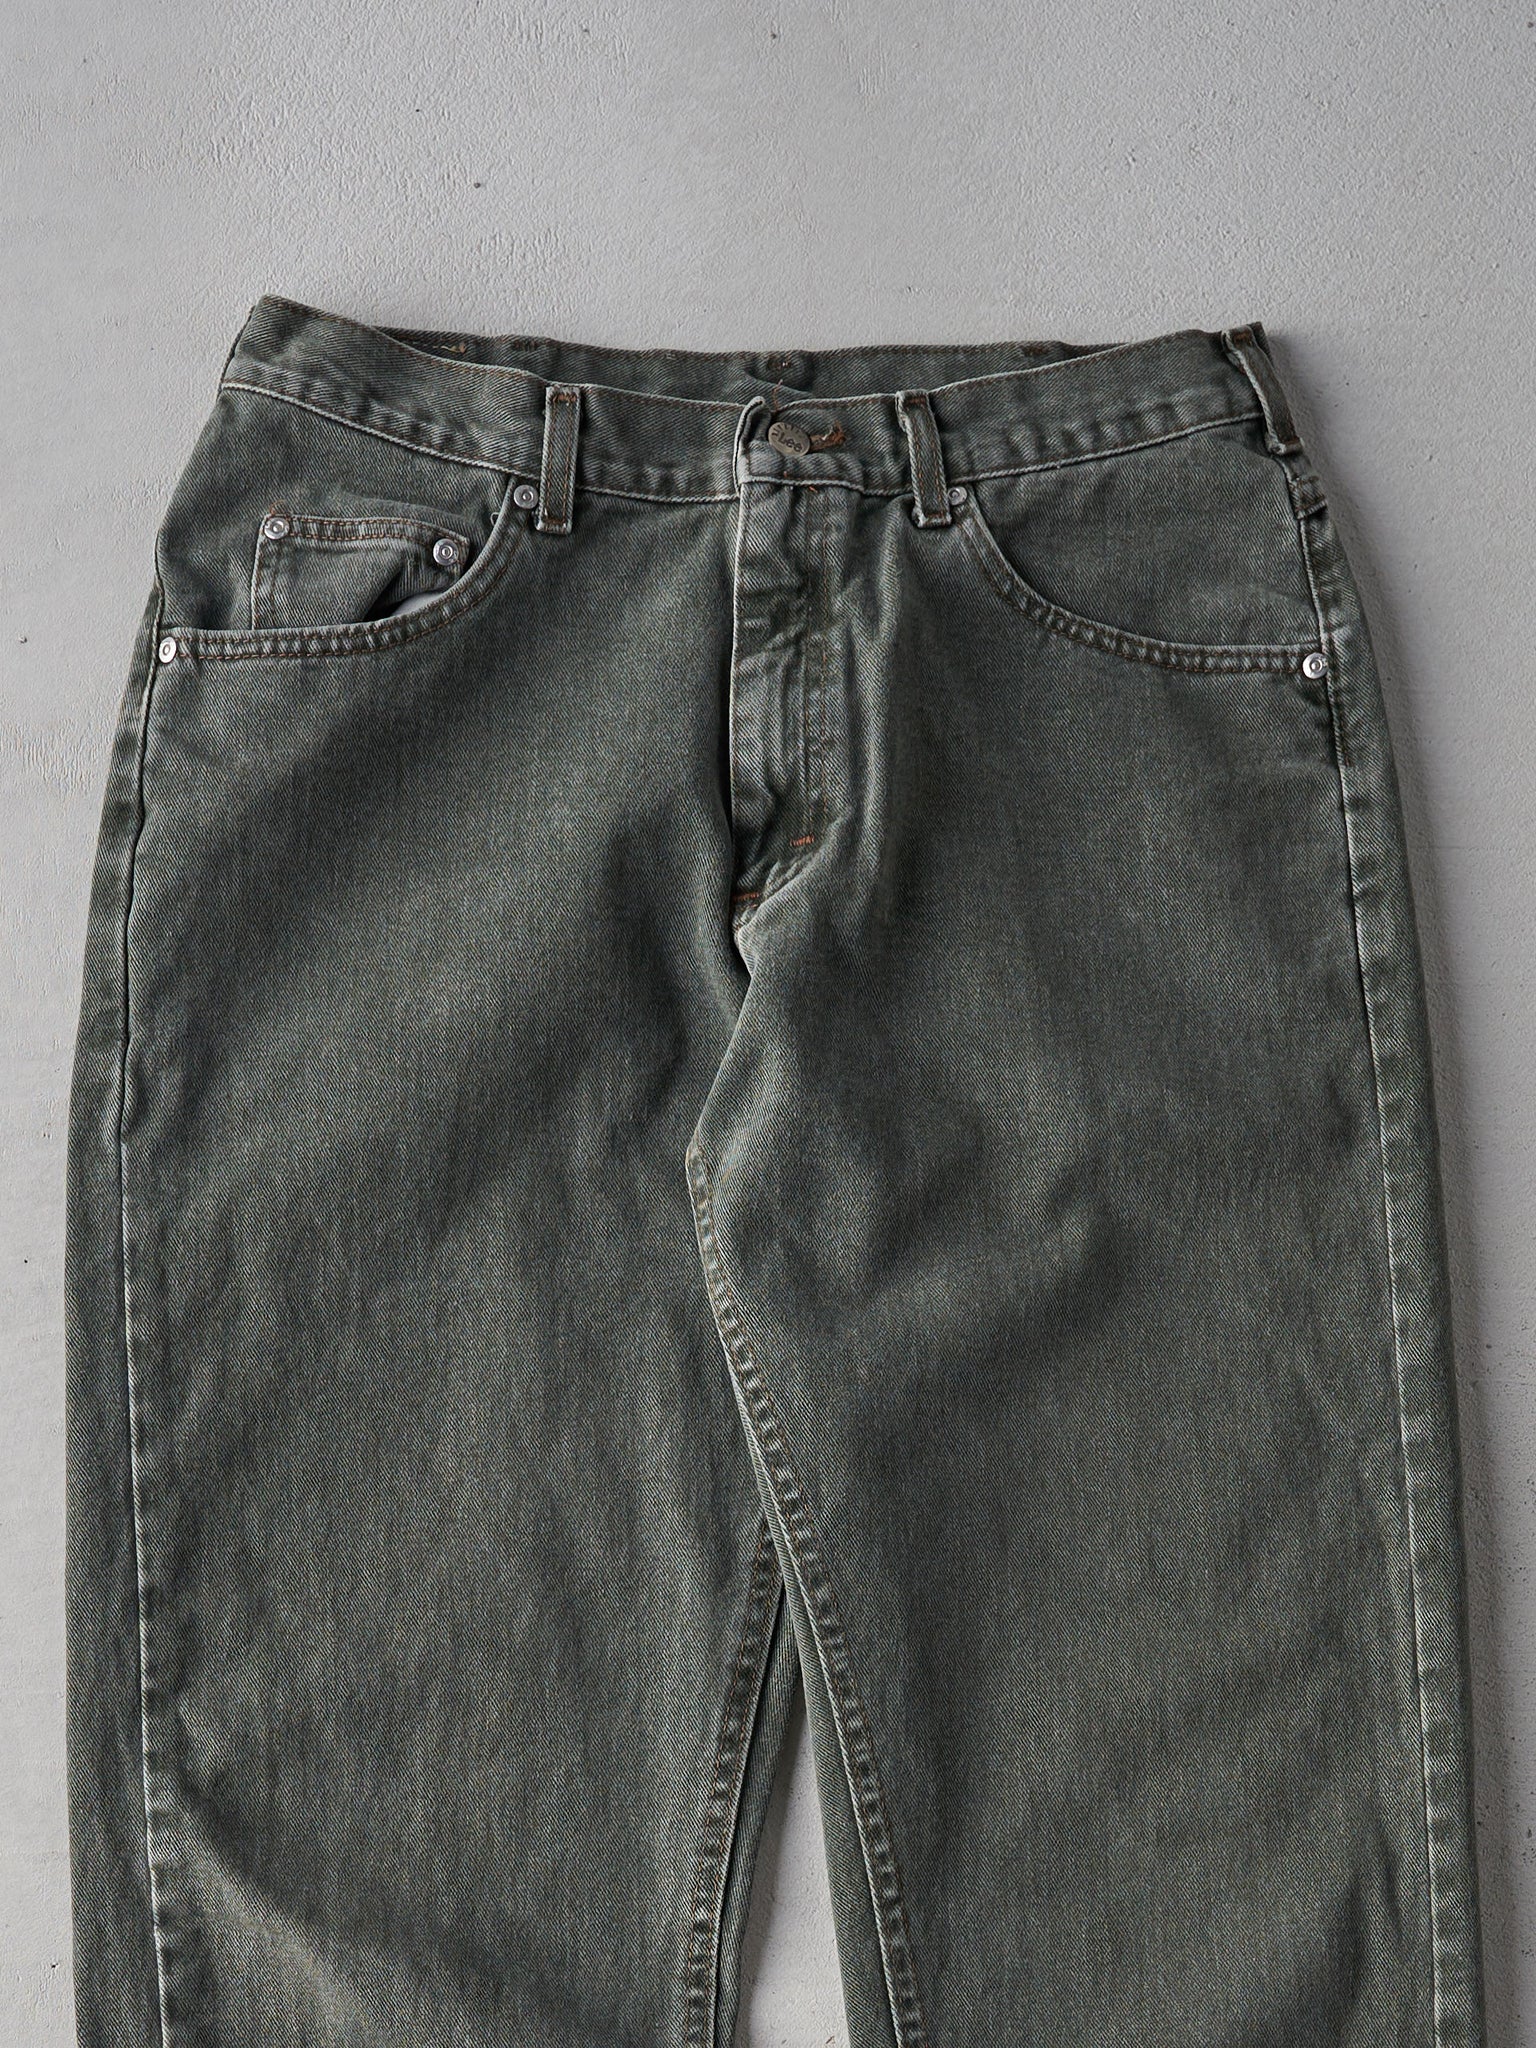 Vintage 90s Dark Green Lee Riveted Pants (33x31)